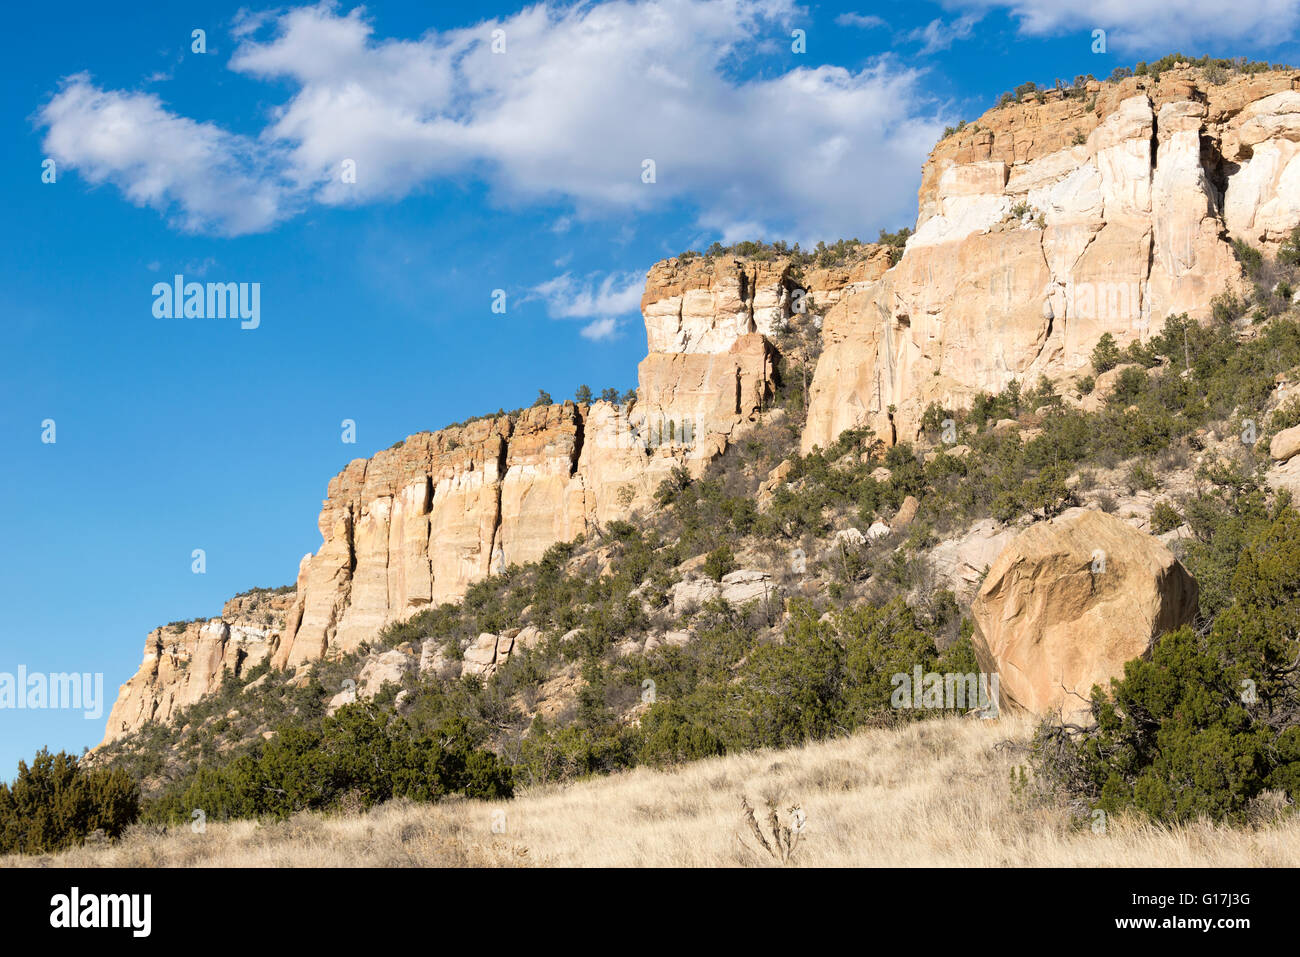 La si restringe, El Malpais monumento nazionale, Nuovo Messico. Foto Stock